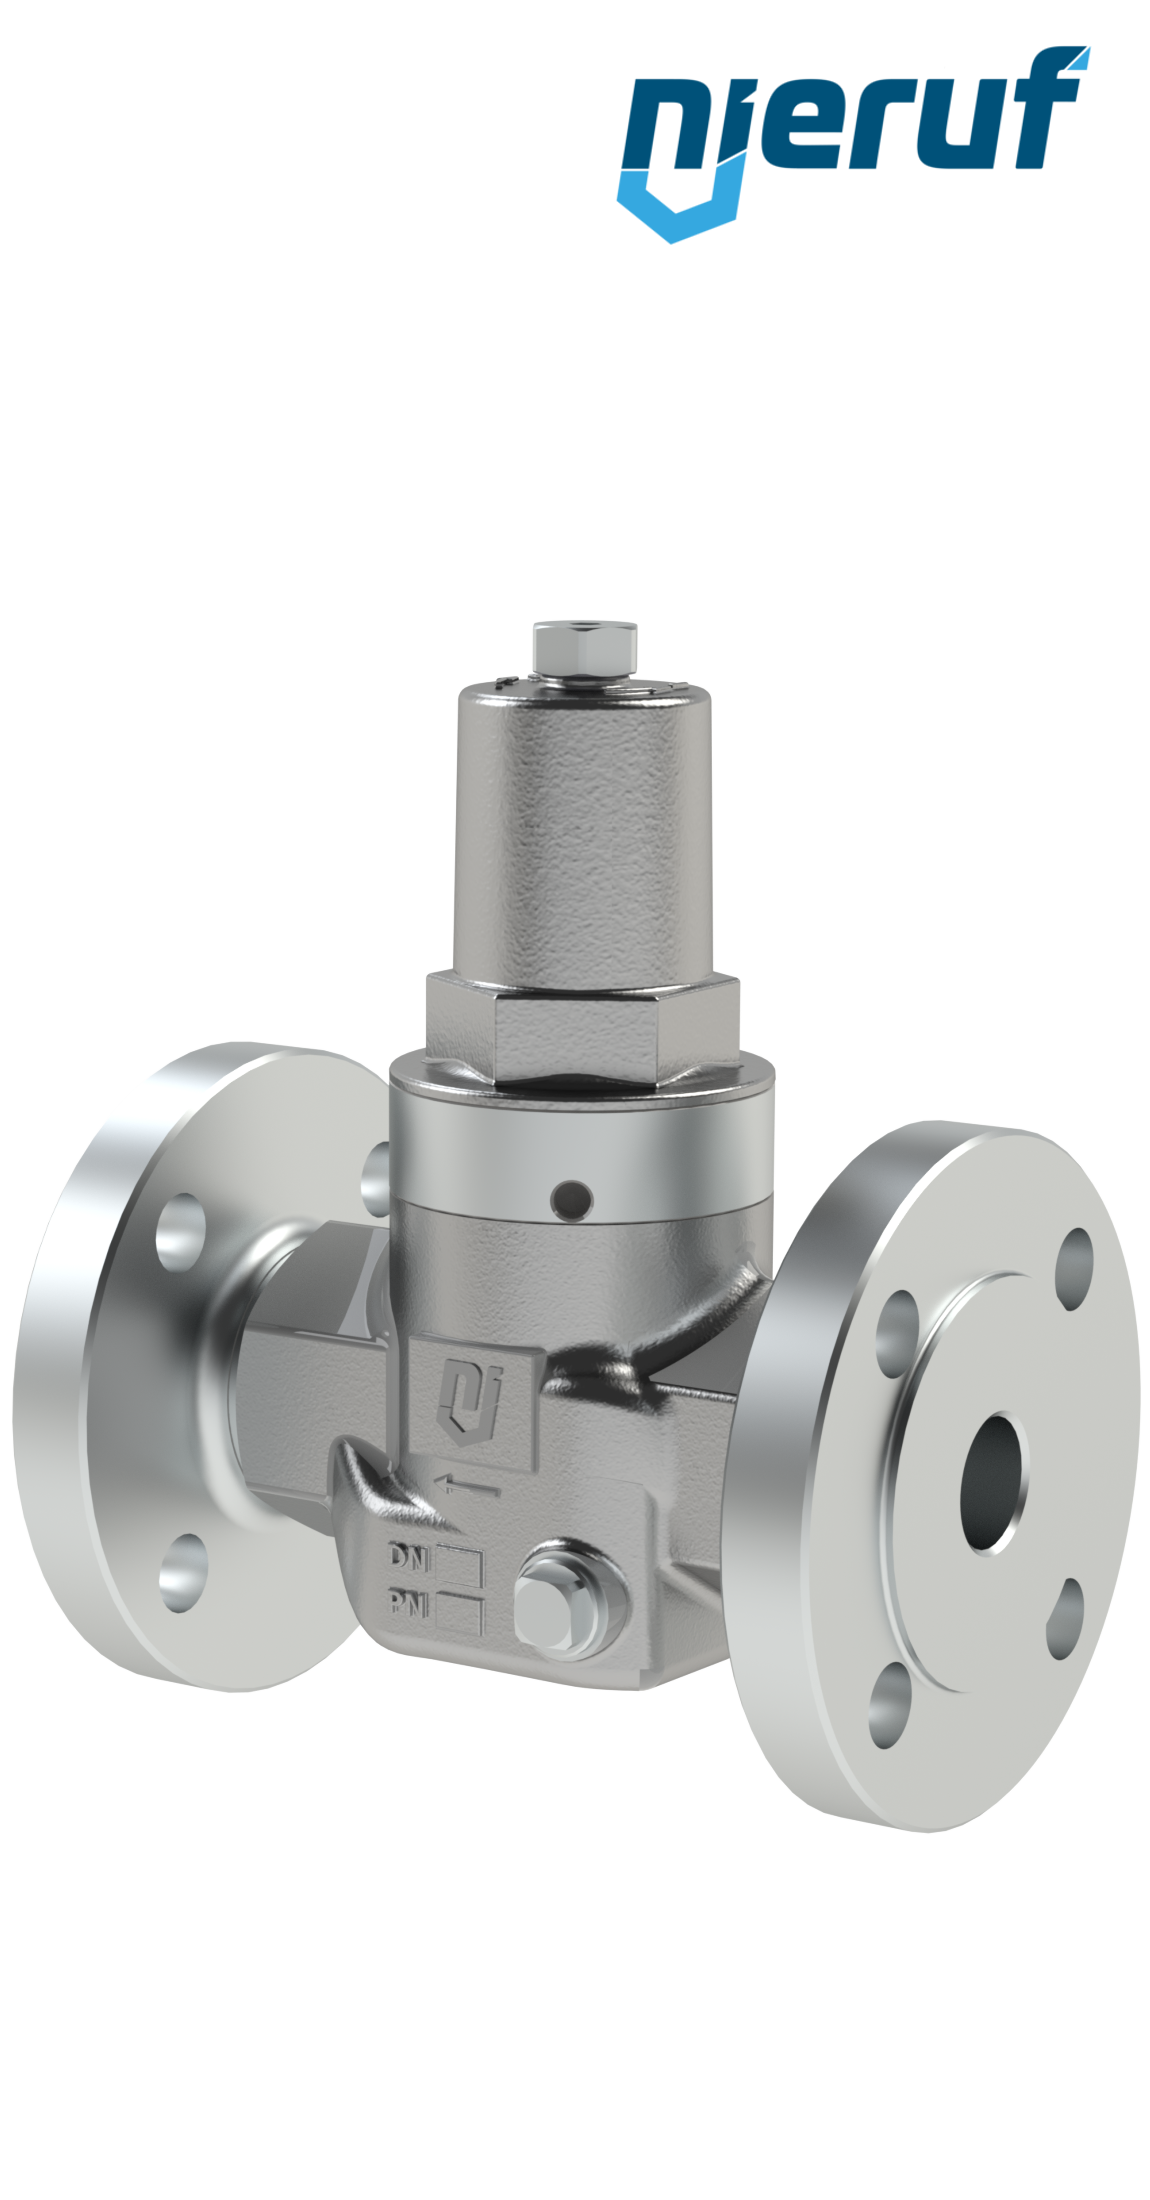 Piston-pressure reducing valve DN15 DM11 stainless steel FPM / FKM 2.0 - 20.0 bar